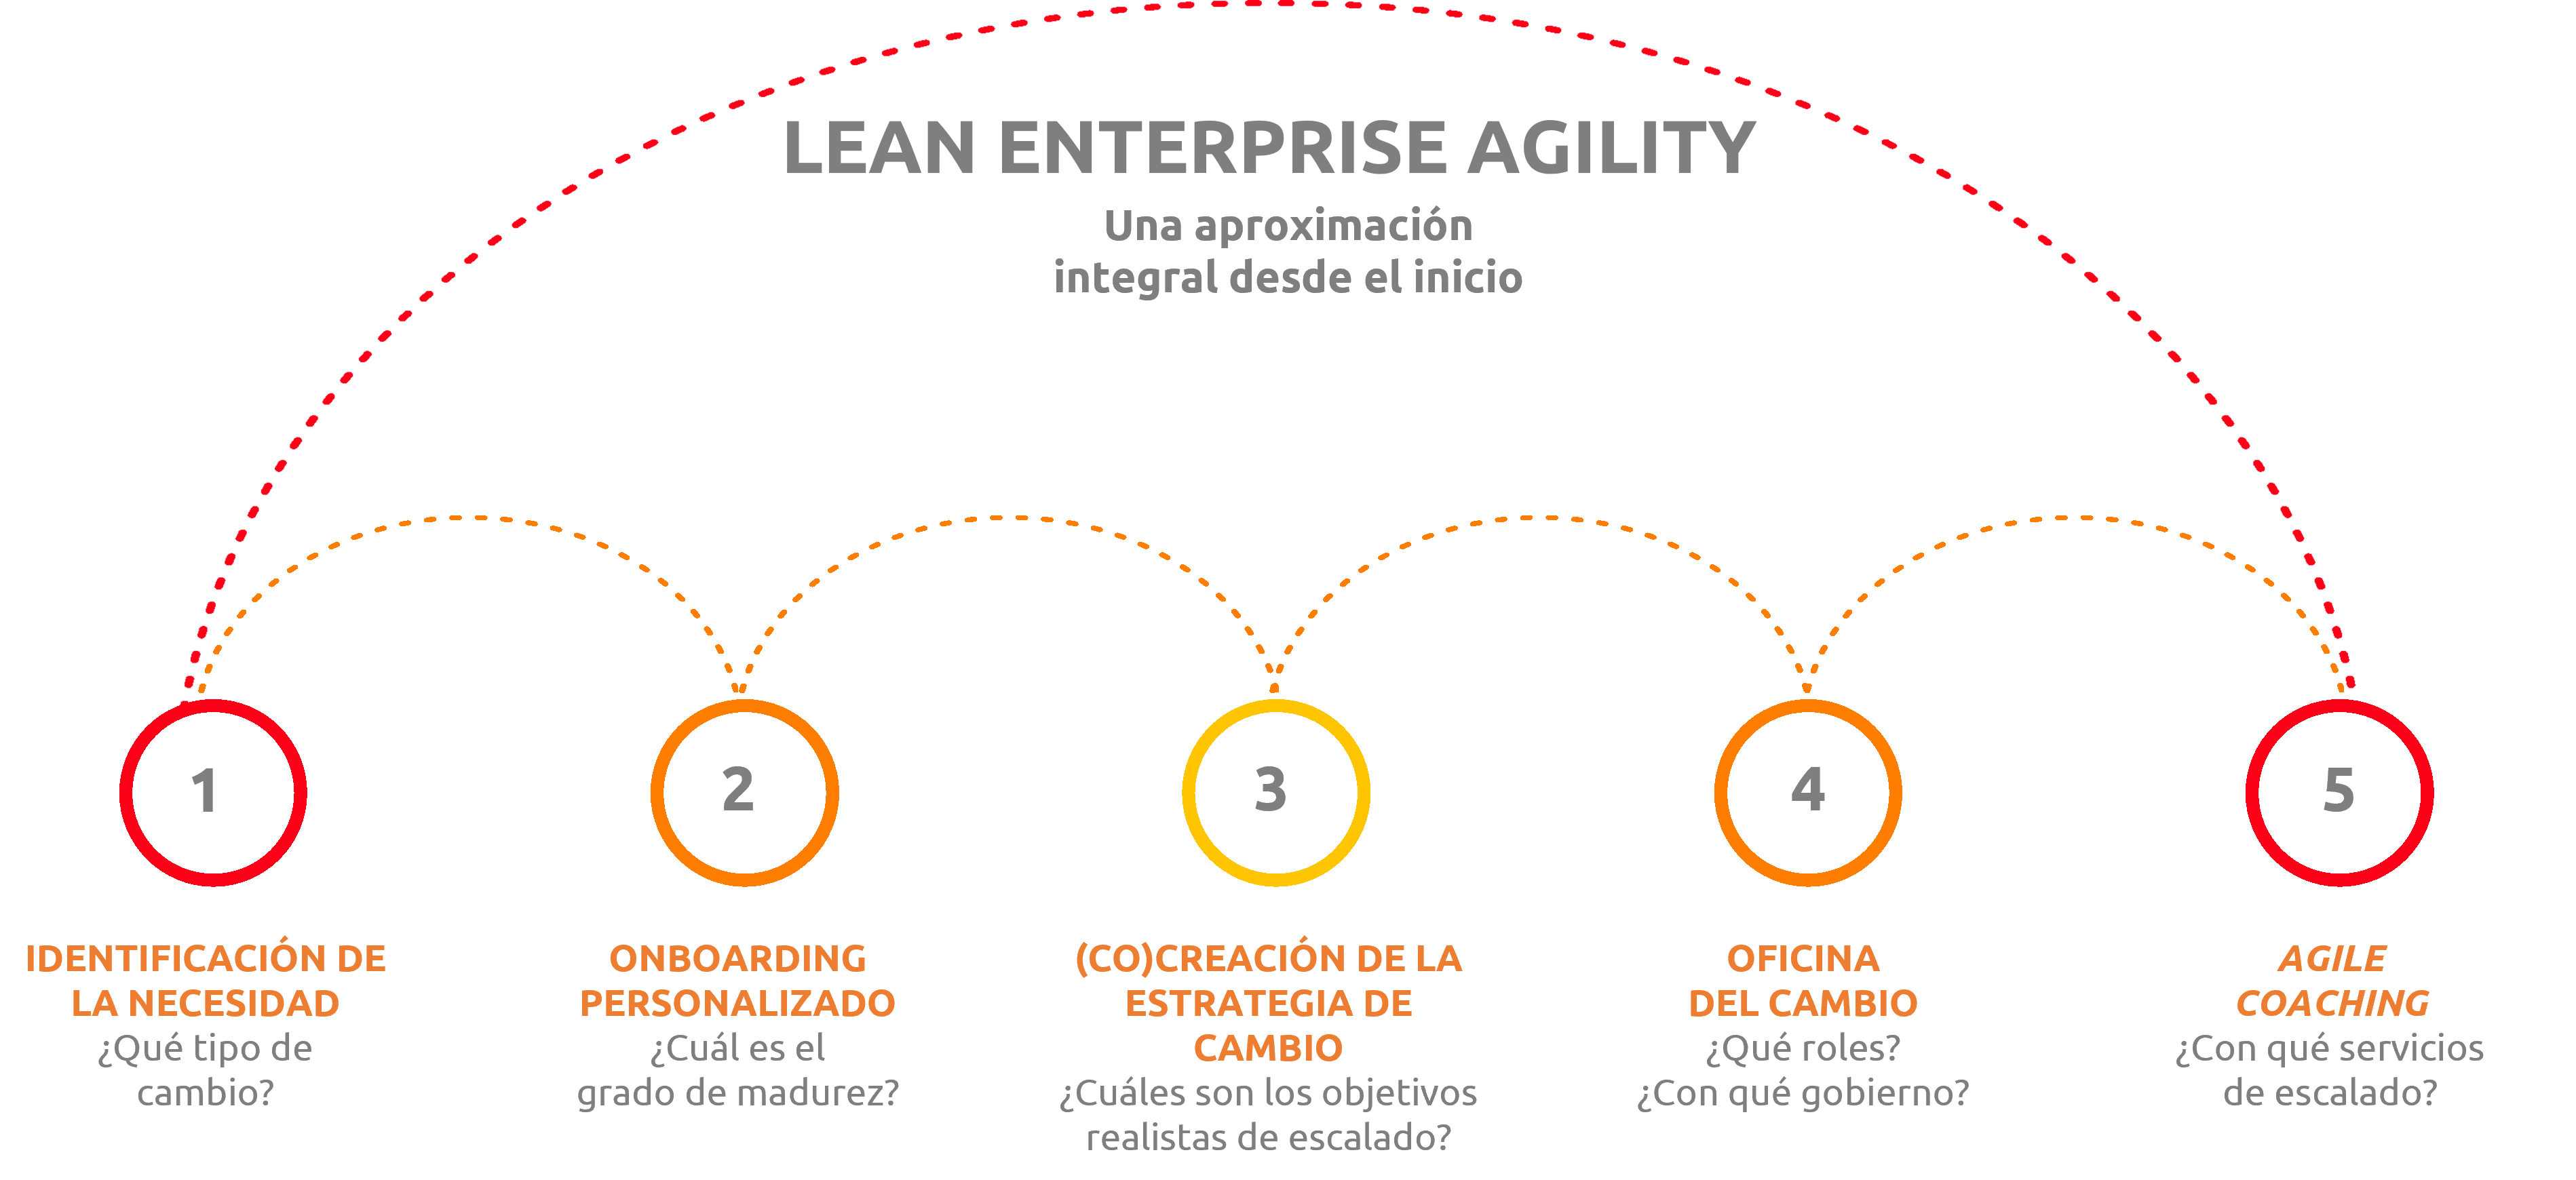 Aplicando nuestra solución Lean Enterprise Agility